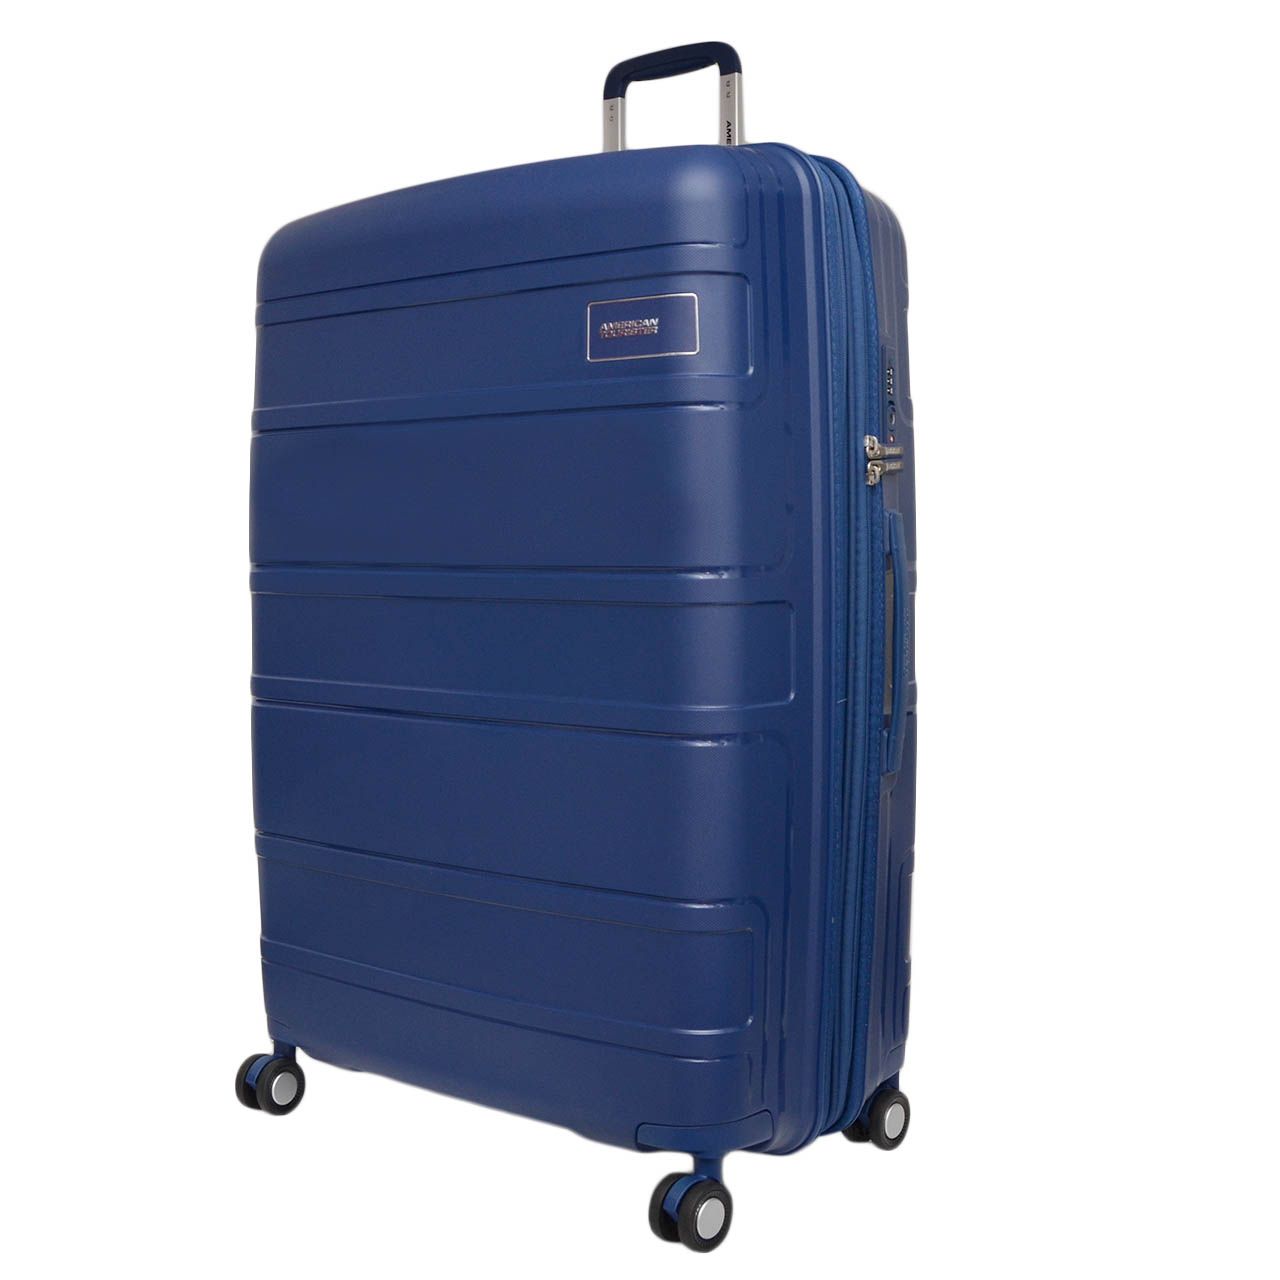 مجموعه سه عددی چمدان امریکن توریستر مدل LITEVLO GZ4  -  - 3